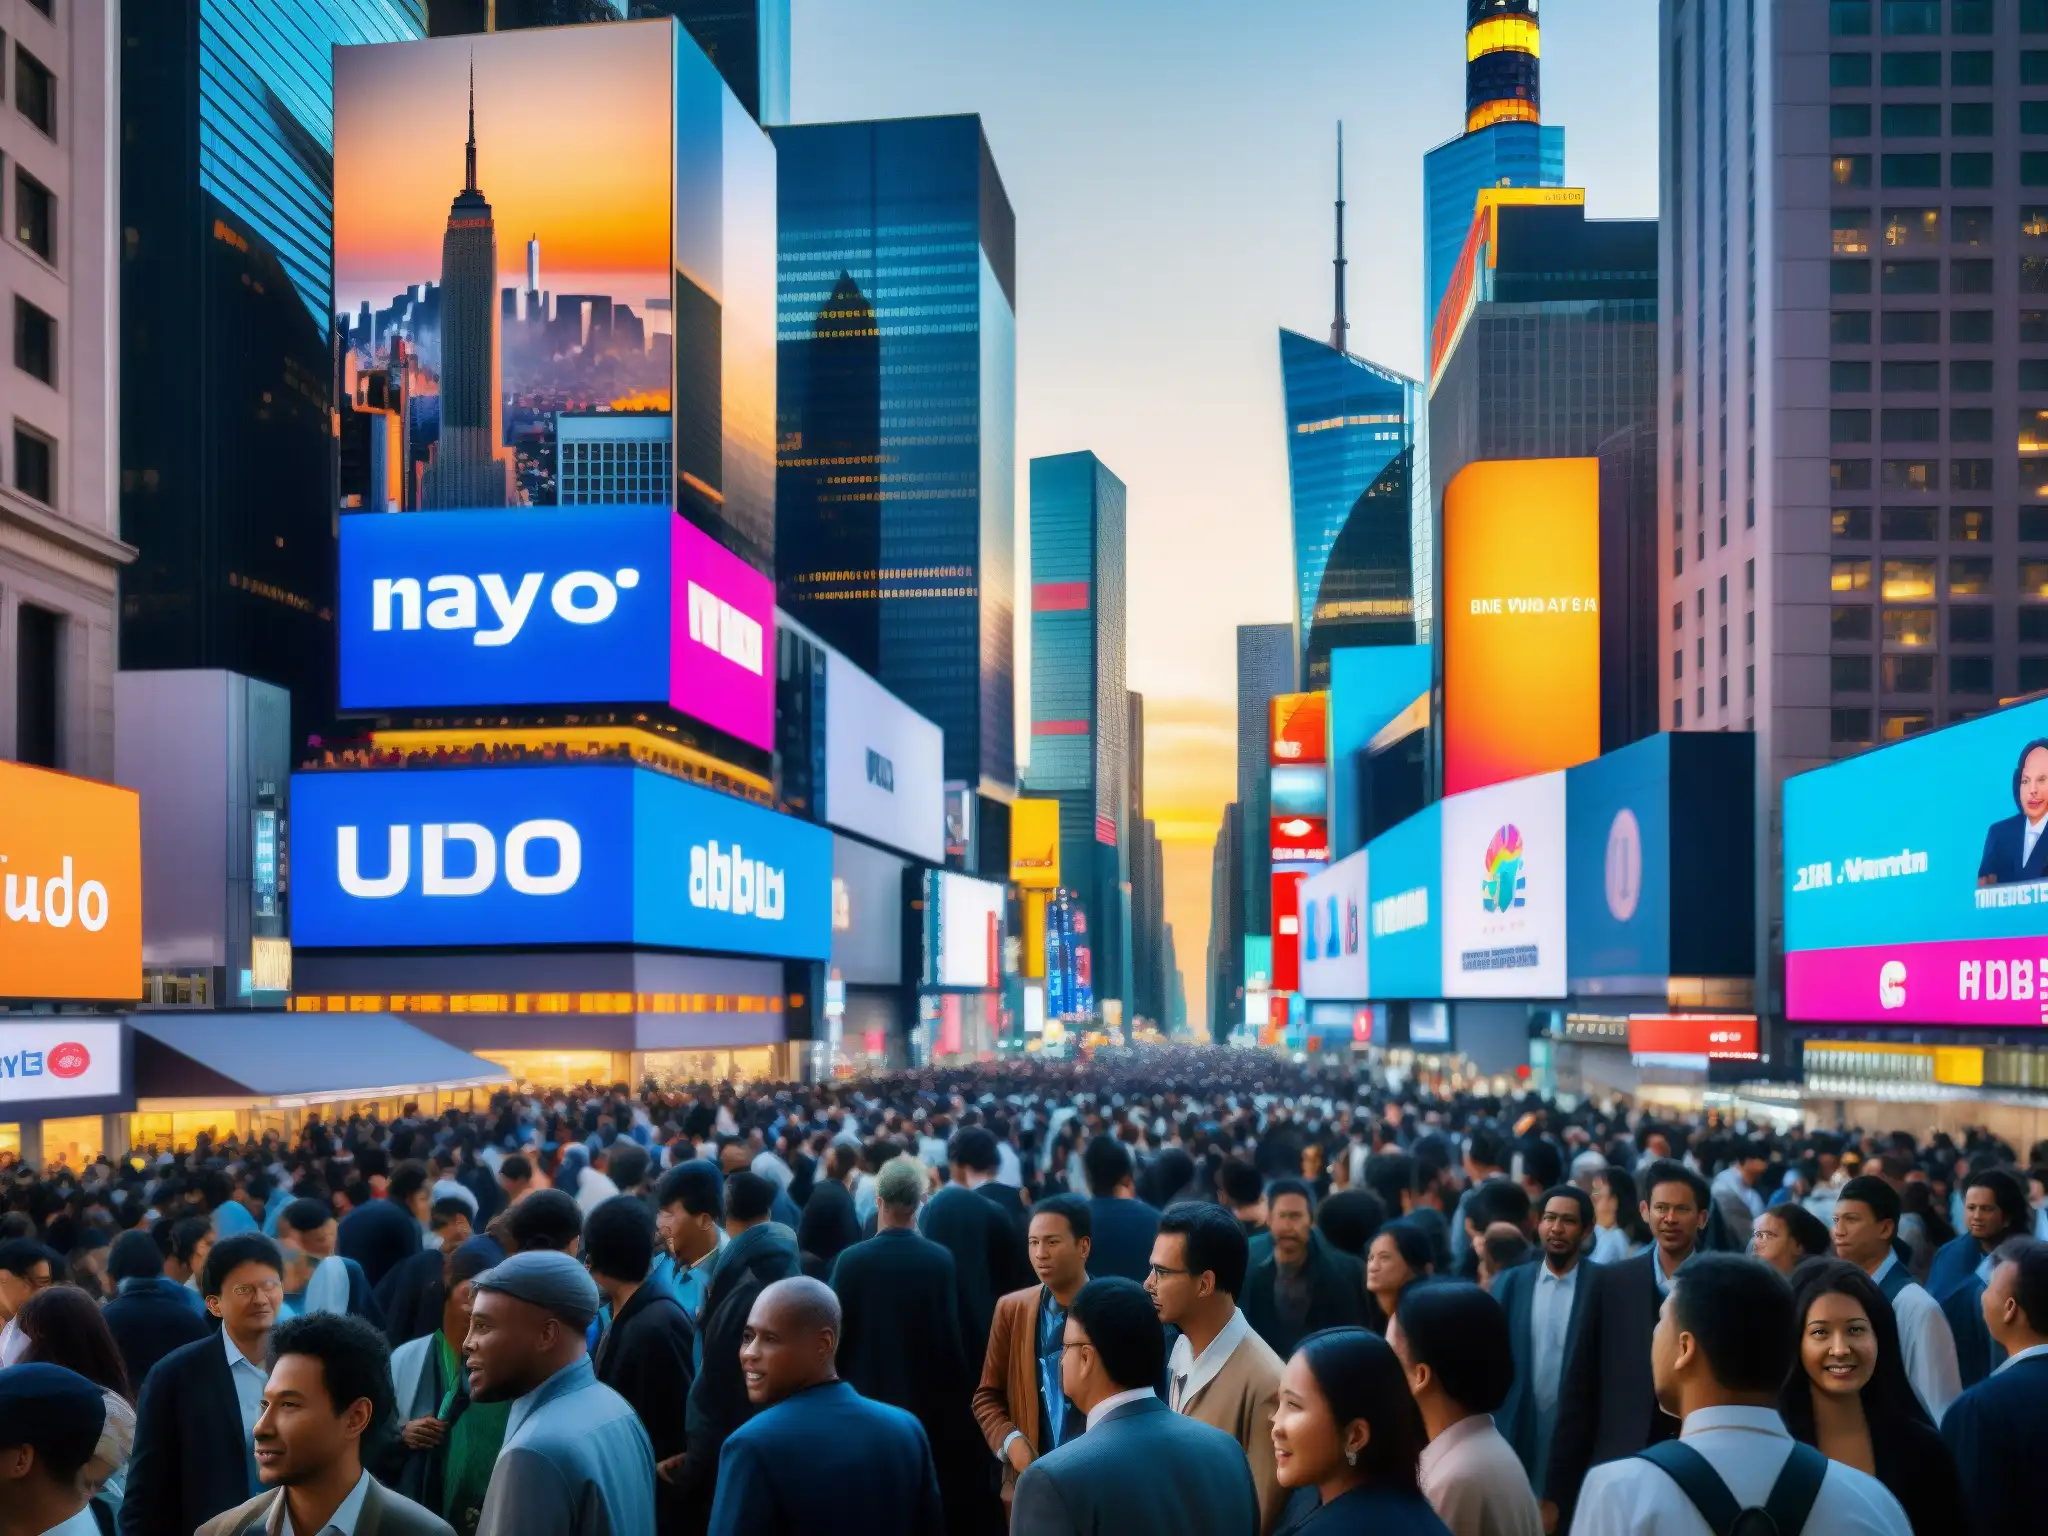 Una imagen de la ciudad moderna, con rascacielos, calles llenas de gente y tecnología, capturando el espíritu del 'El Nuevo Orden Mundial análisis'